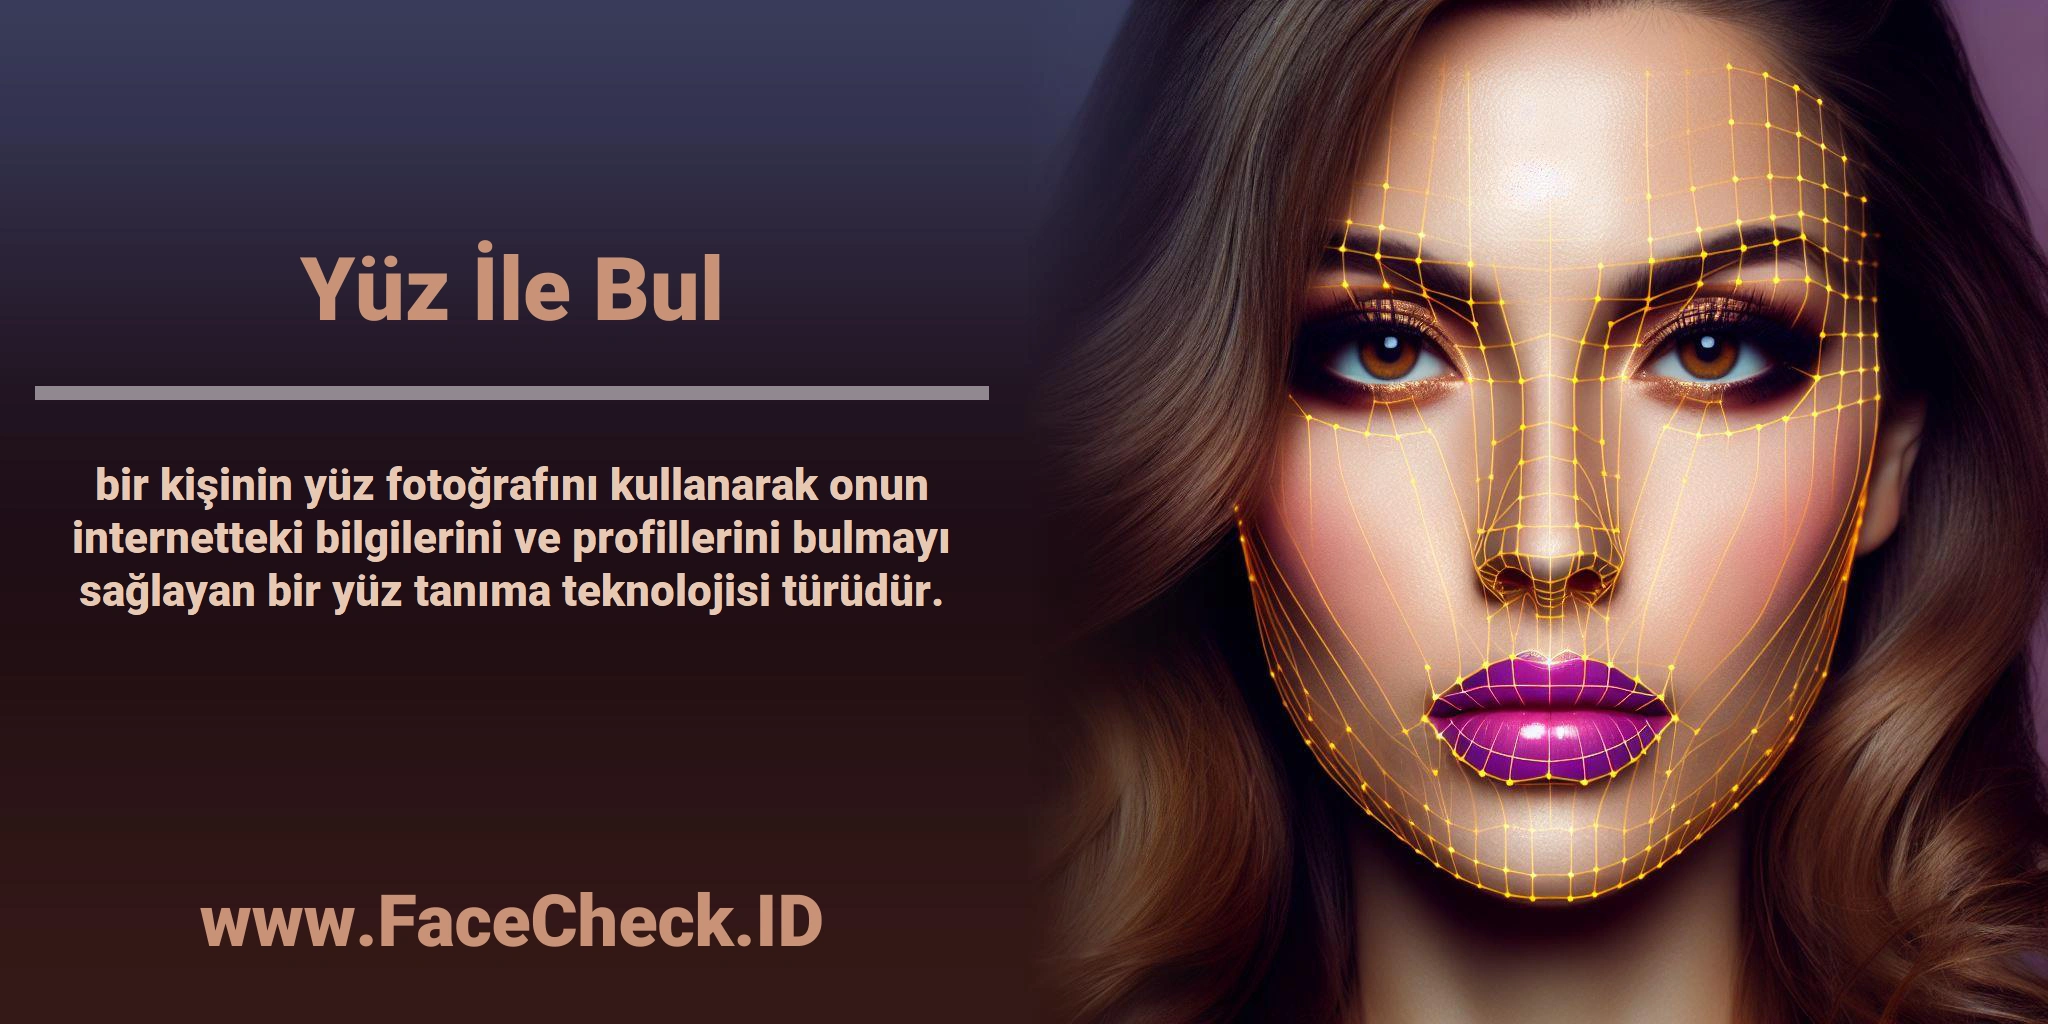 <b>Yüz İle Bul</b> bir kişinin yüz fotoğrafını kullanarak onun internetteki bilgilerini ve profillerini bulmayı sağlayan bir yüz tanıma teknolojisi türüdür.